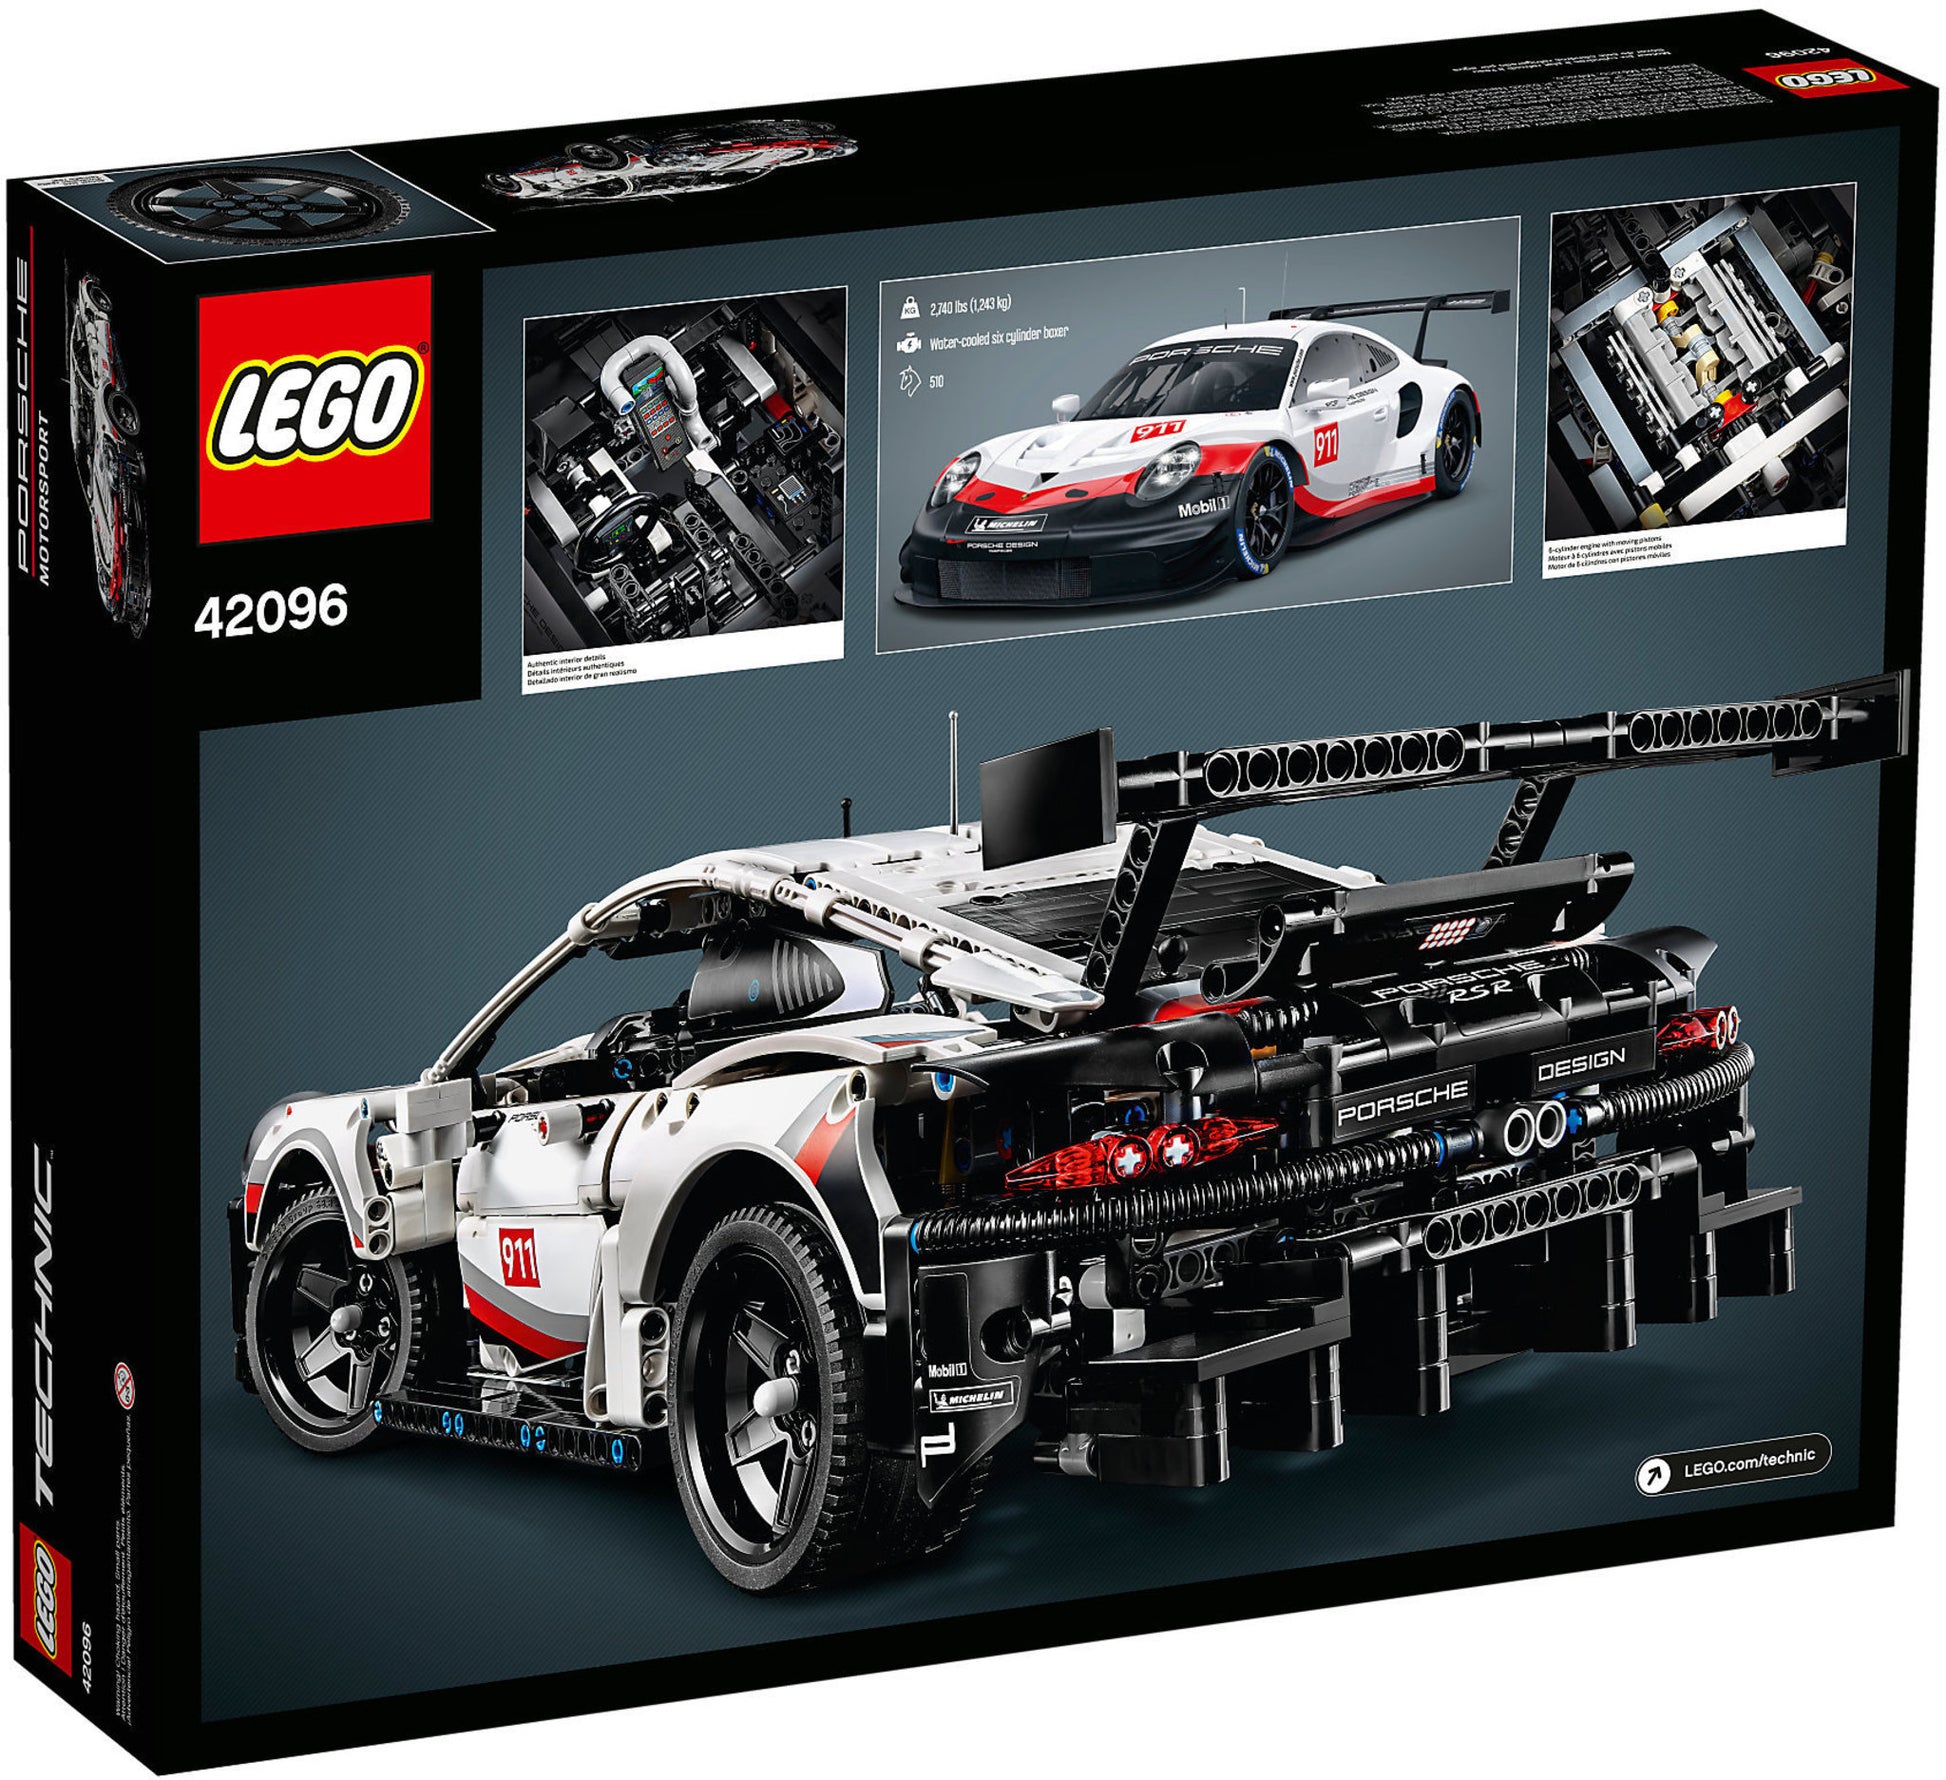 42096 LEGO Technic - Porsche 911 Rsr – sgorbatipiacenza